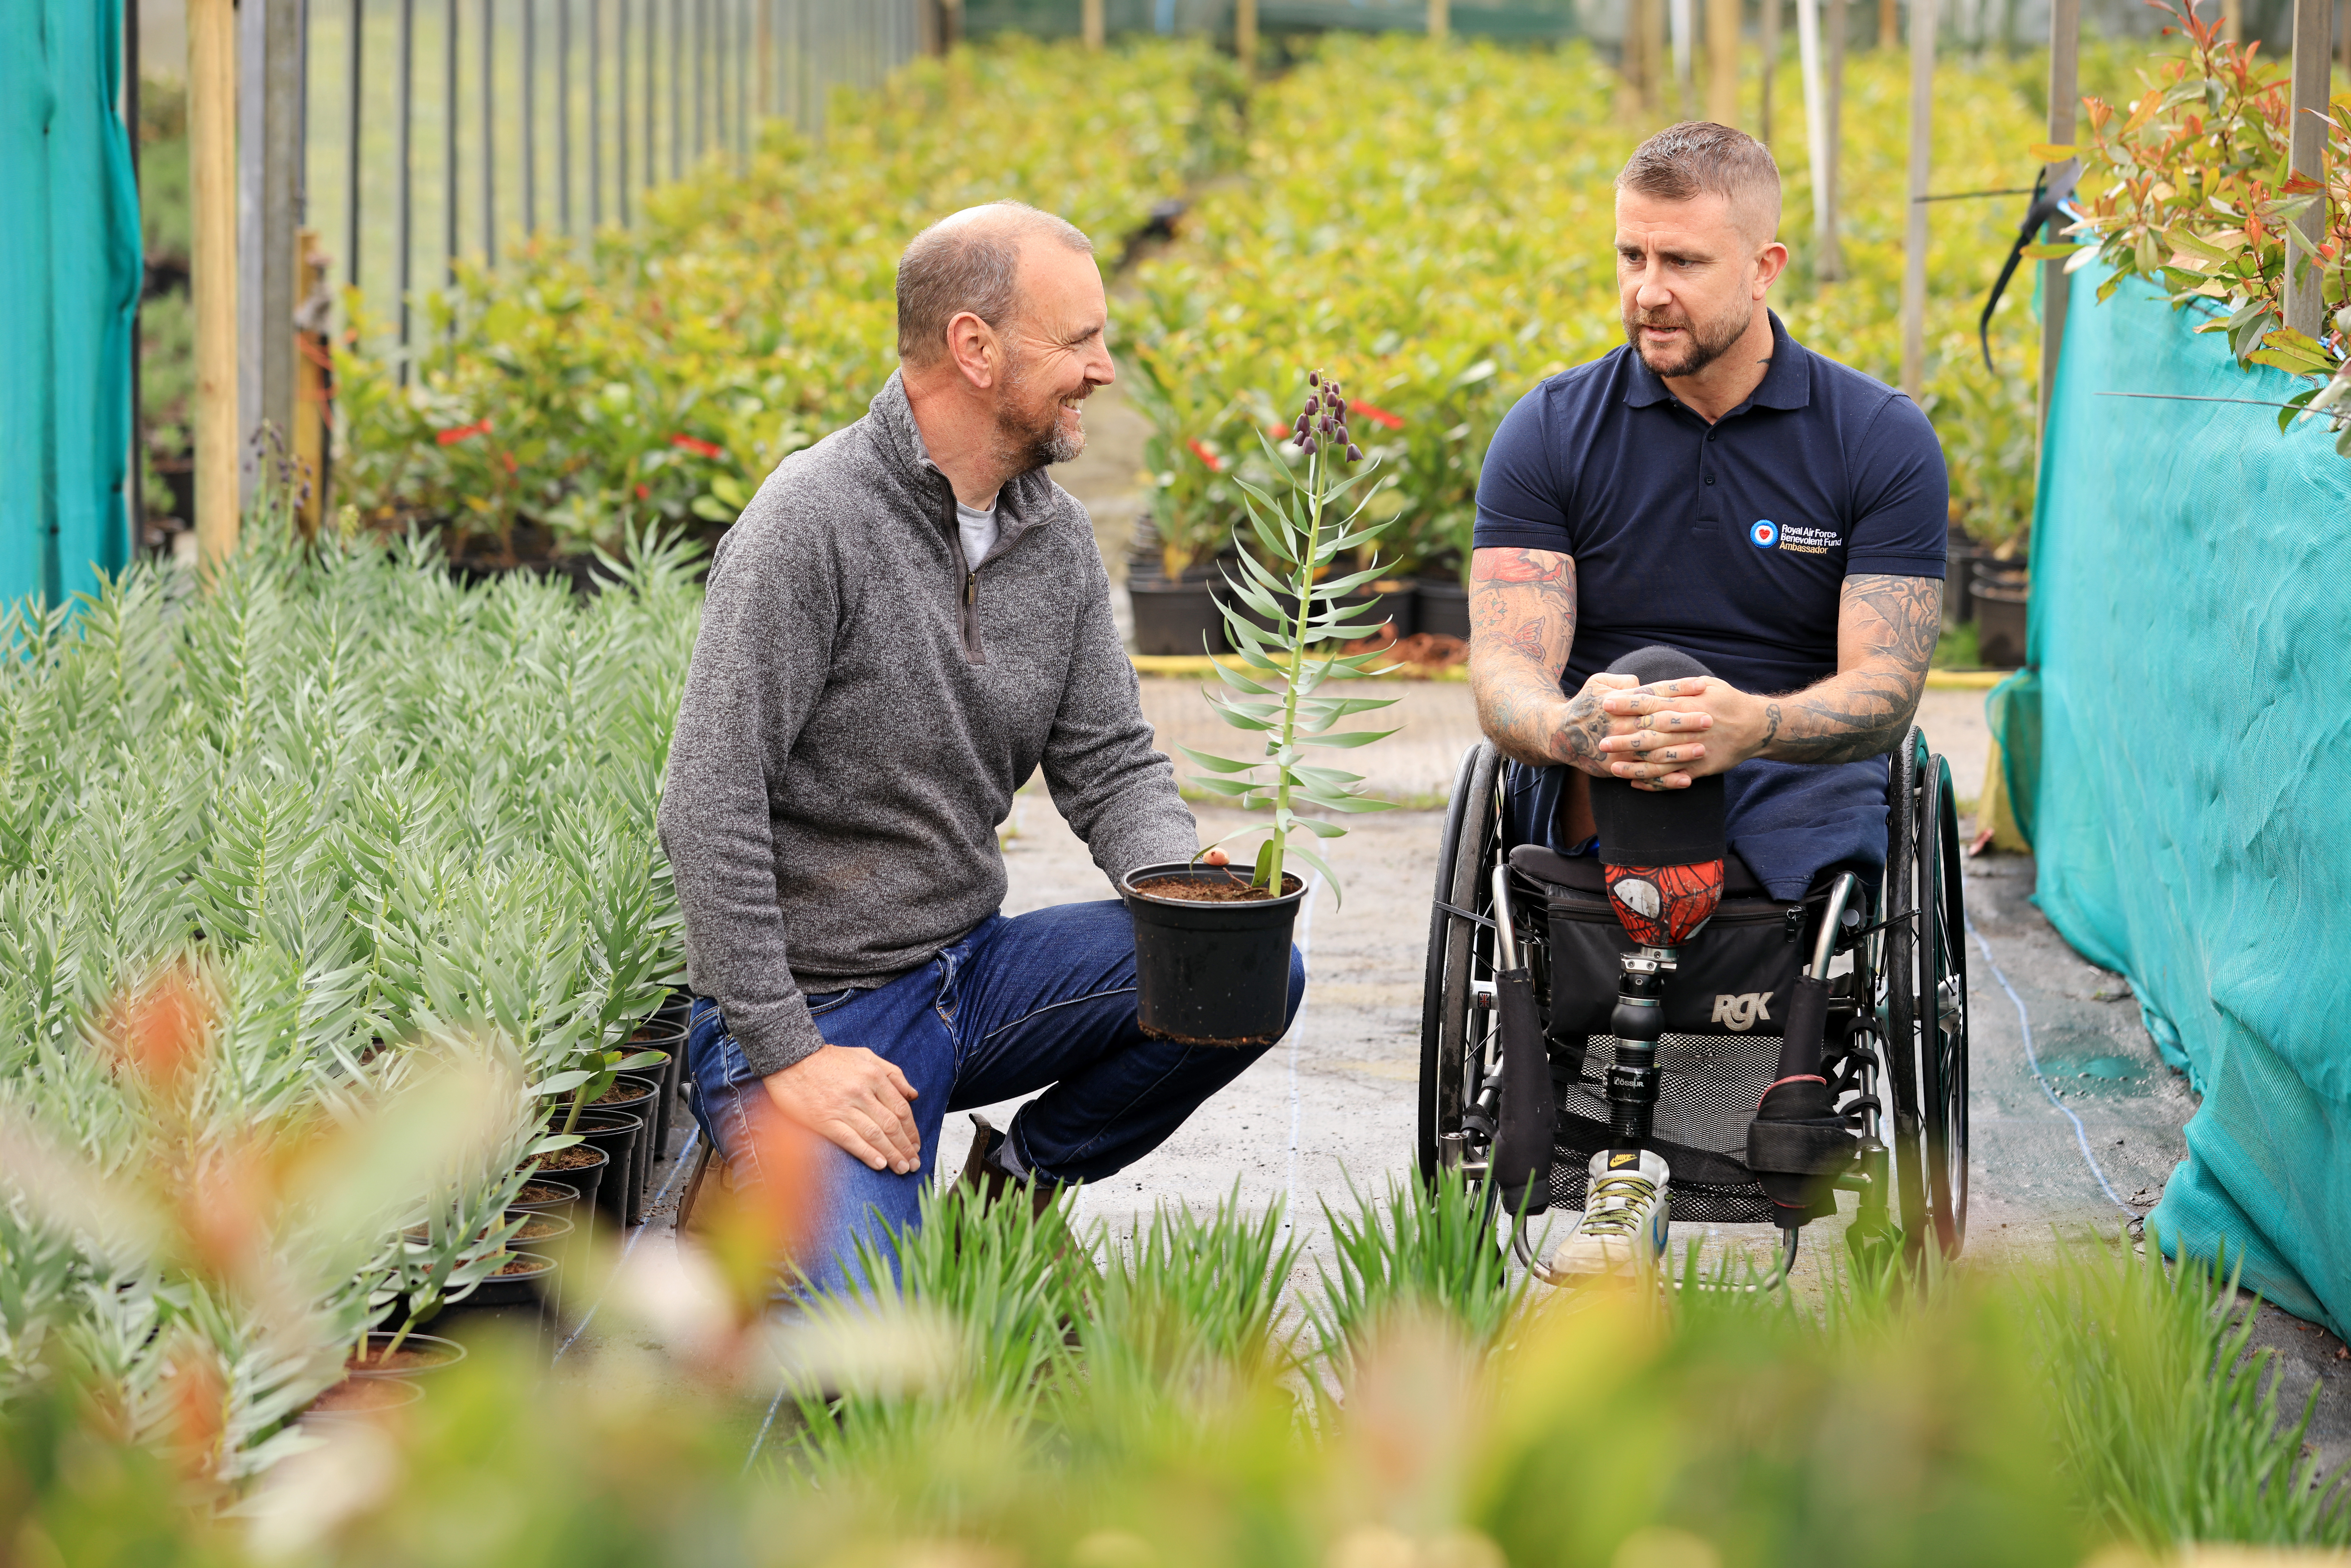 Wheelchair user in garden plots.